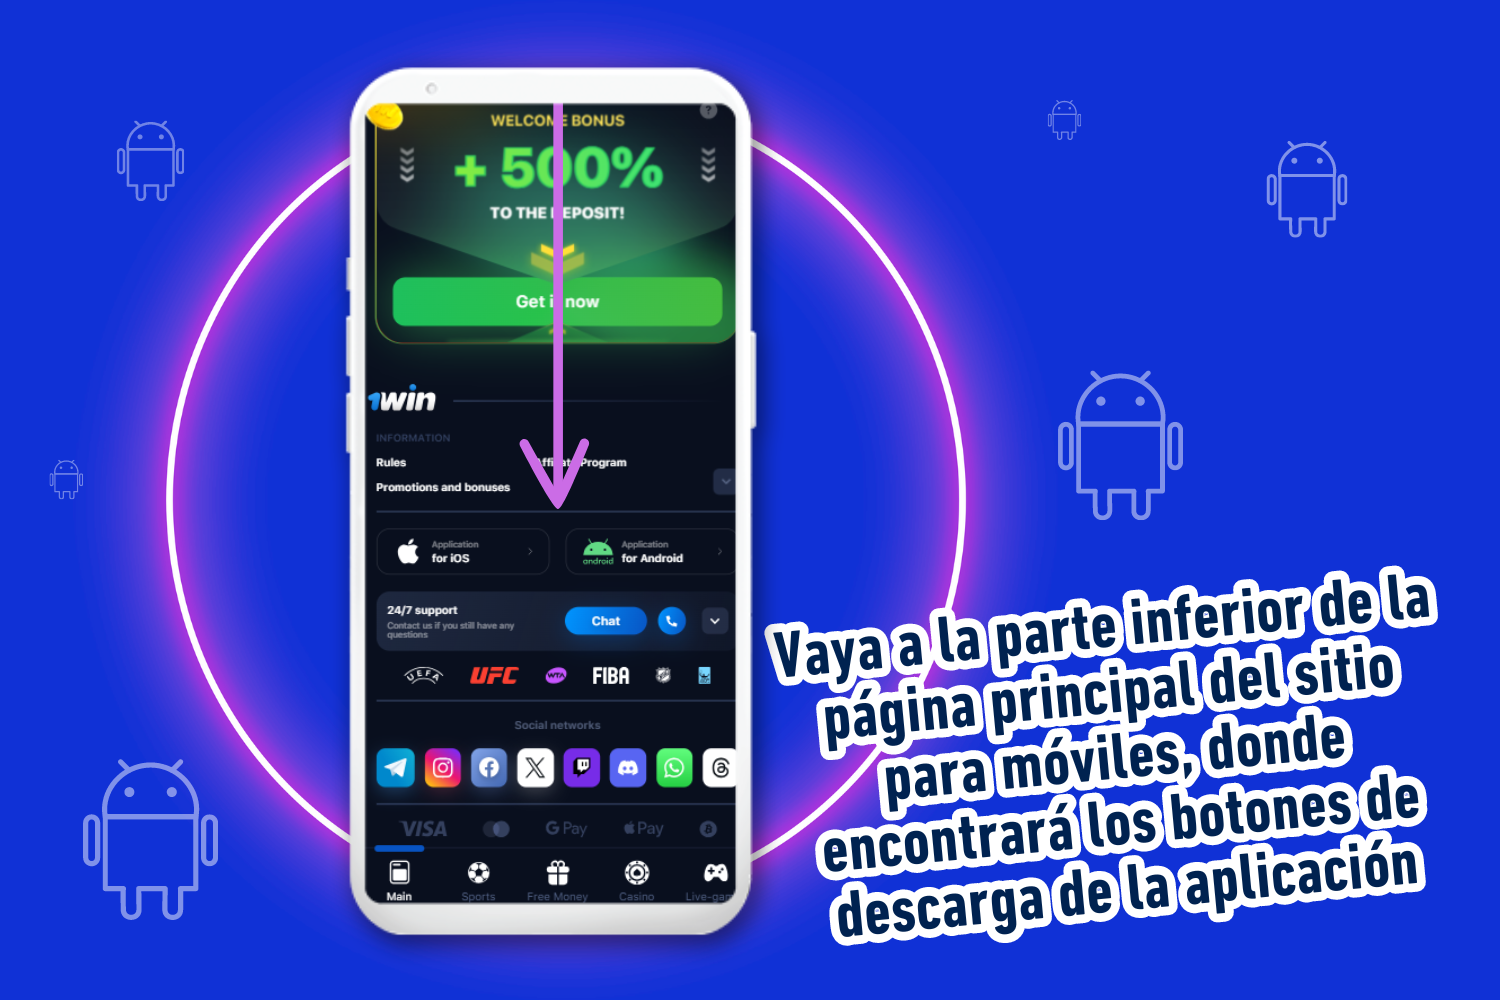 Para descargar la aplicación 1win para Android, un usuario de México debe desplazarse hasta el final del sitio